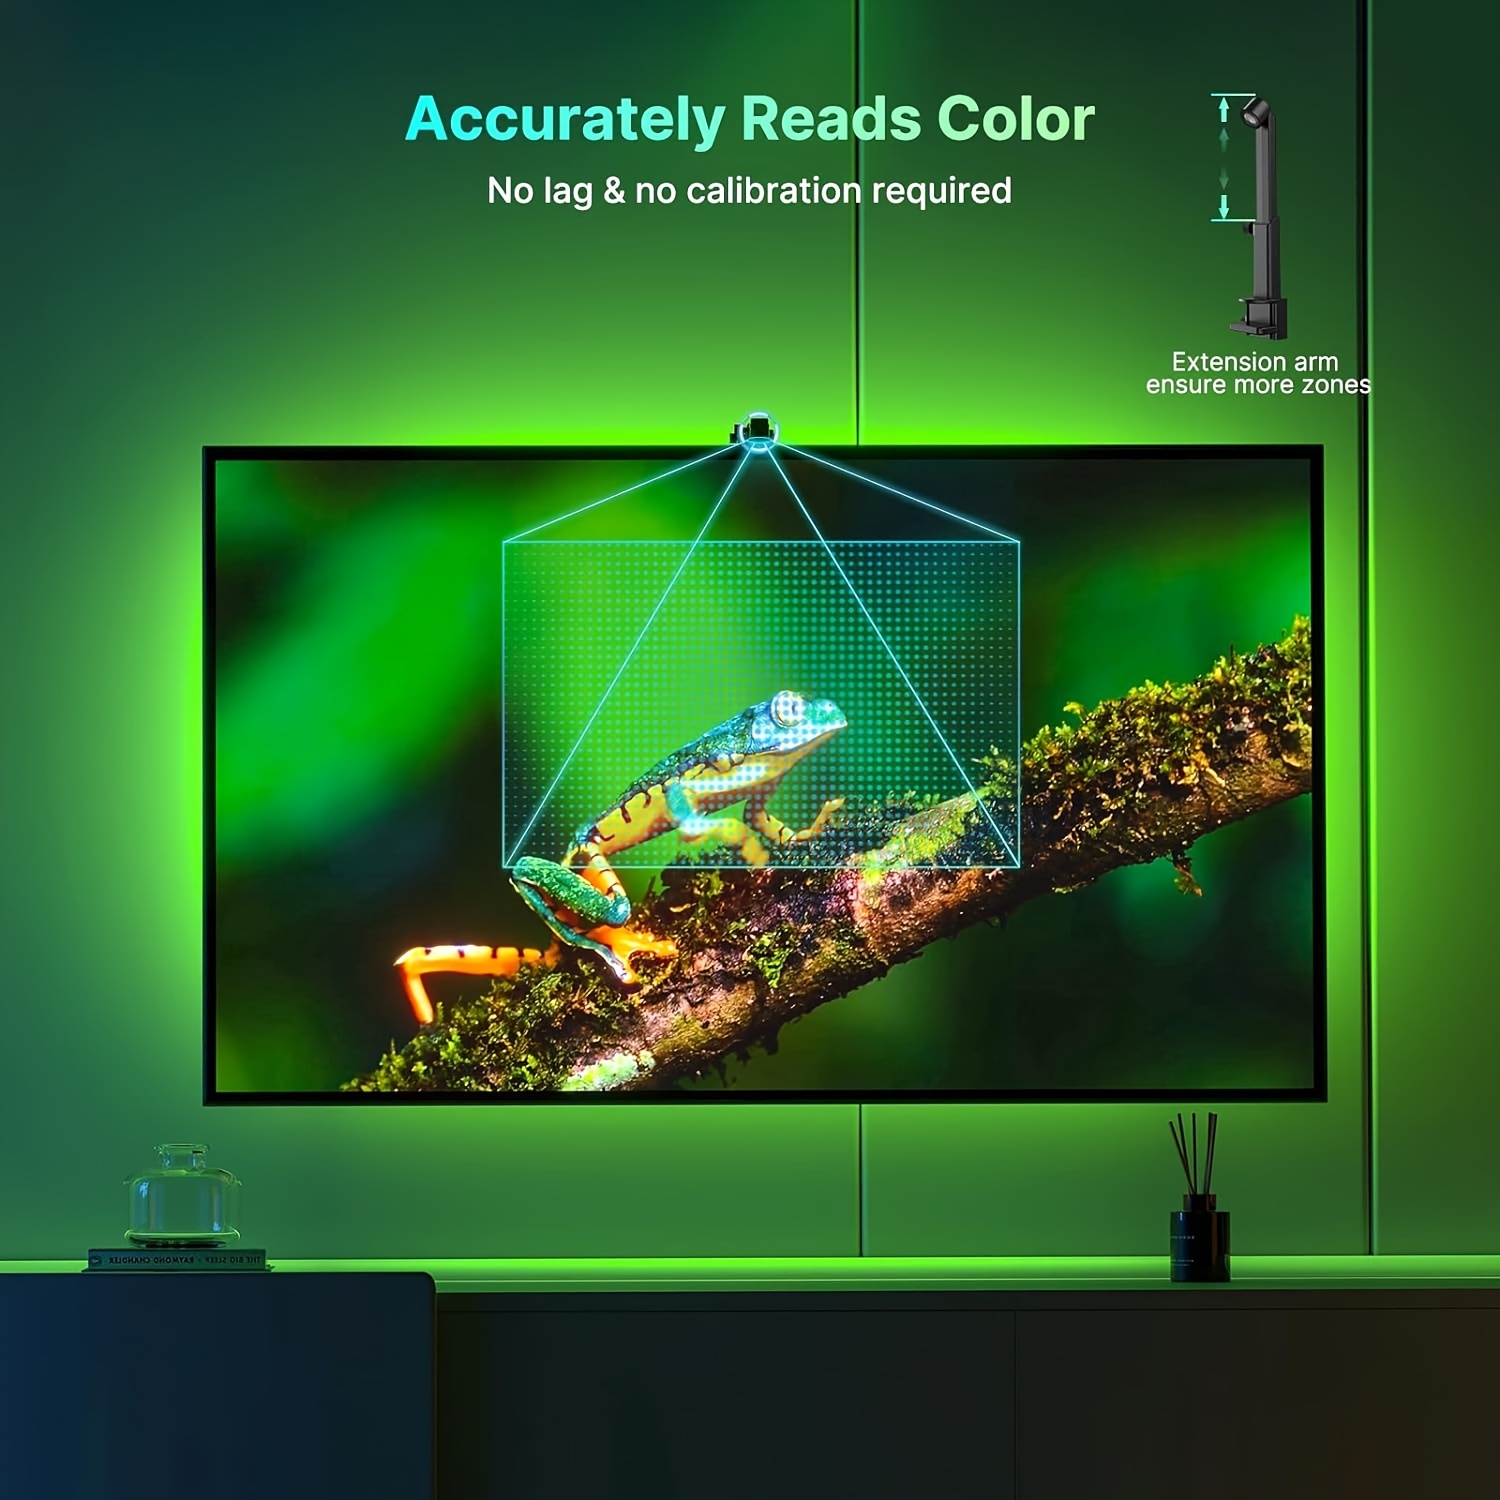 Strip striscia led luce RGB 3 5m per TV televisore retroilluminazione  multicolore musicale con telecomando con alimentatore USB